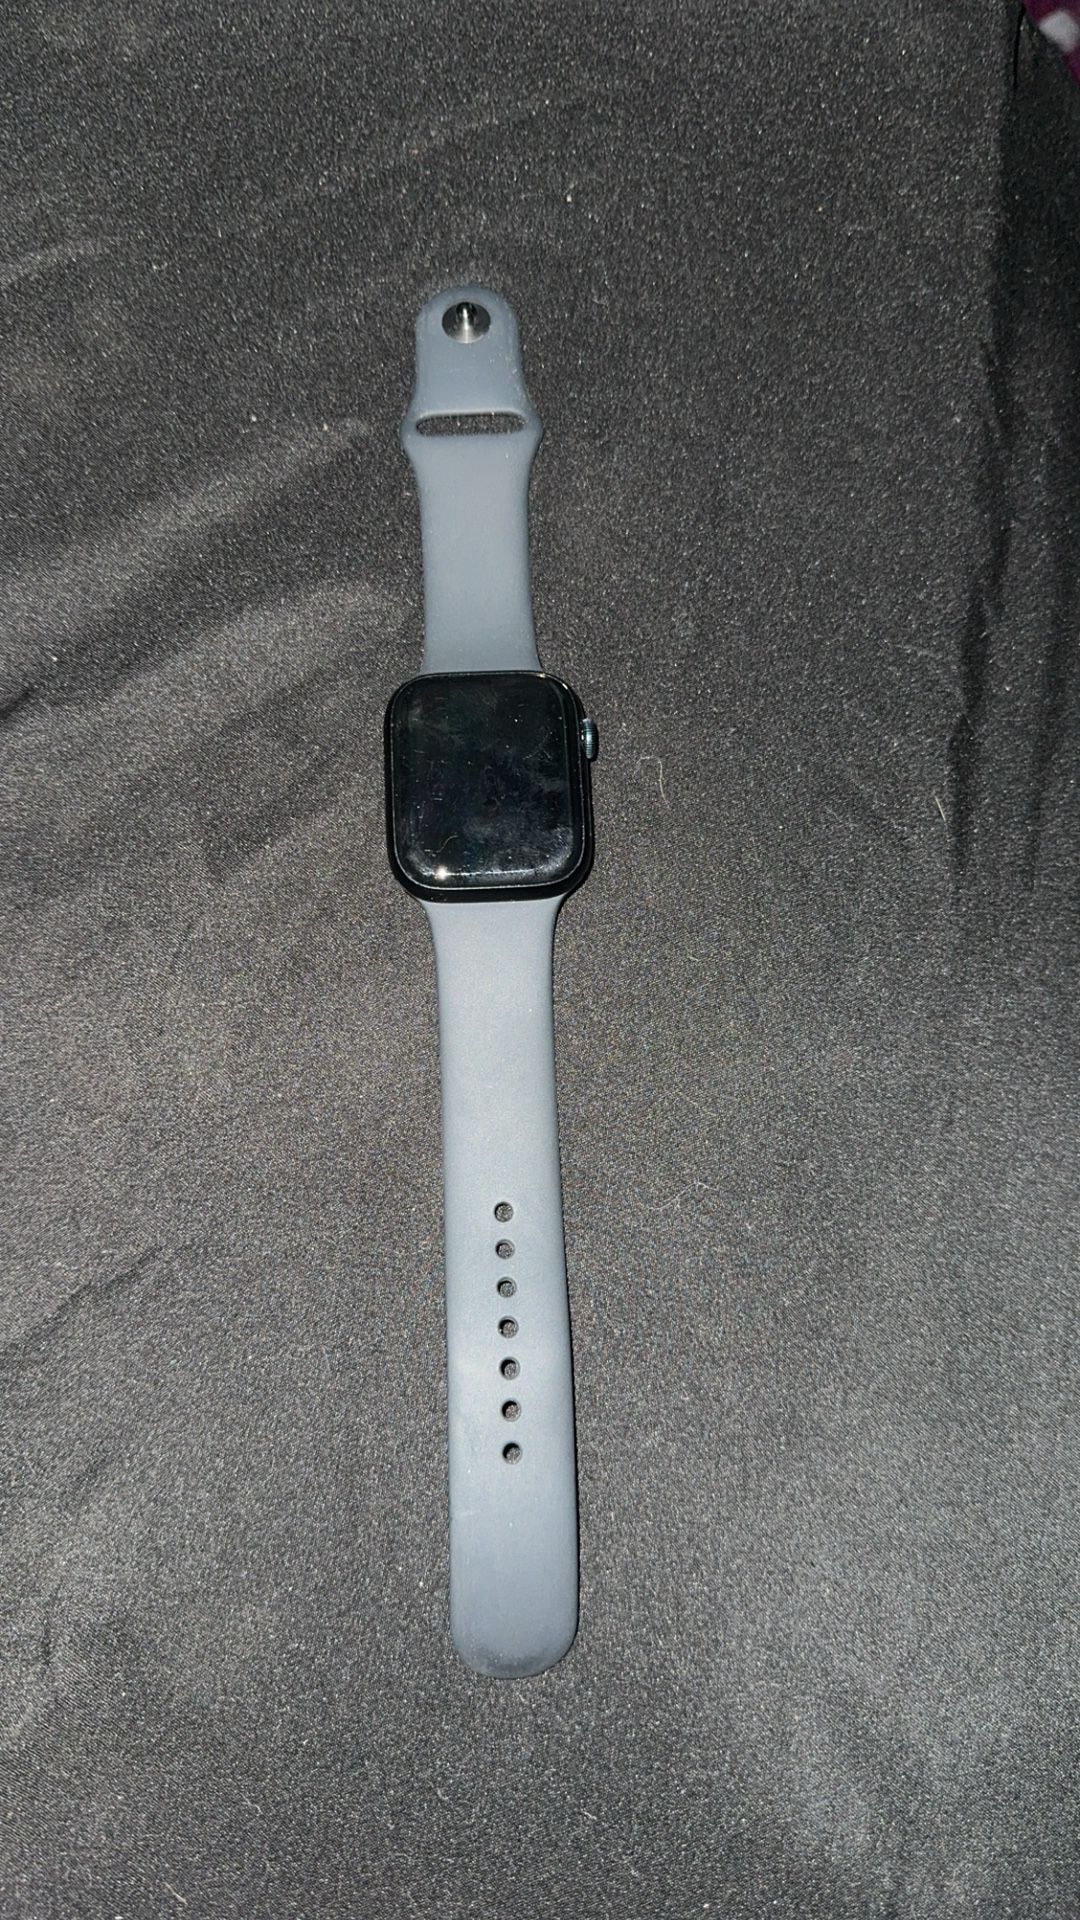 apple watch 